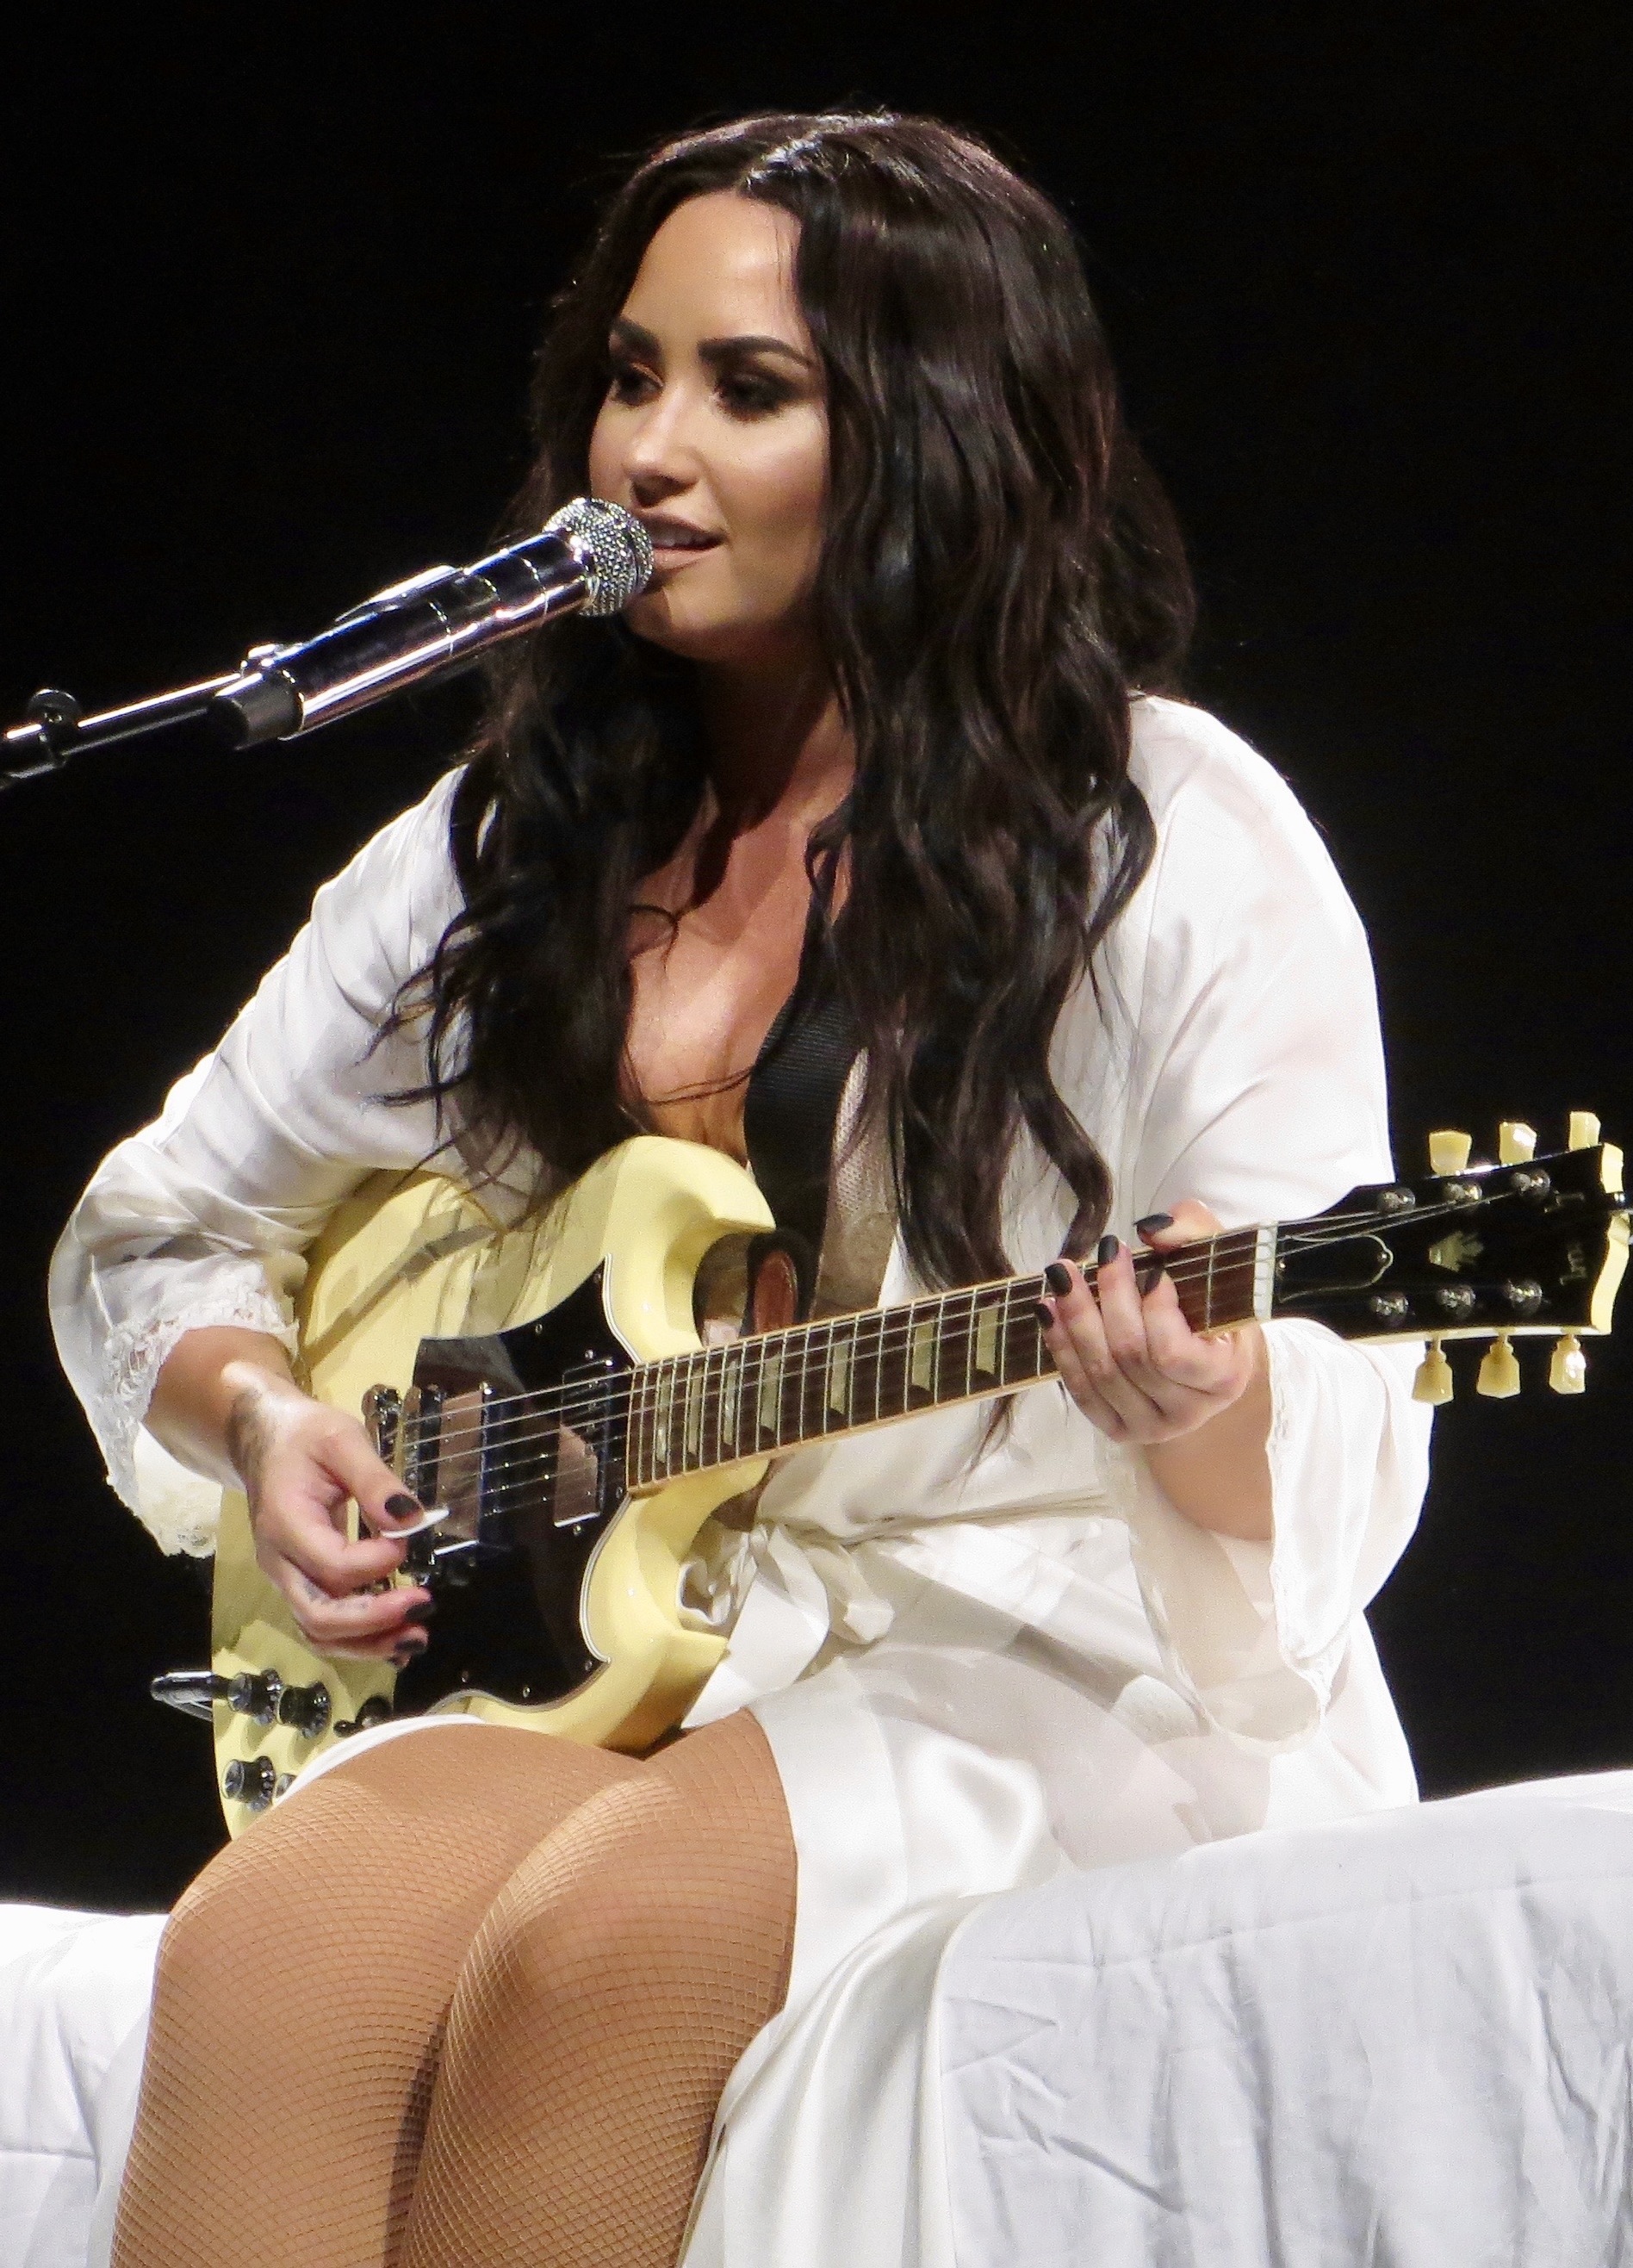 File:Demi Lovato 3 (42749539272) (cropped).jpg - Wikipedia